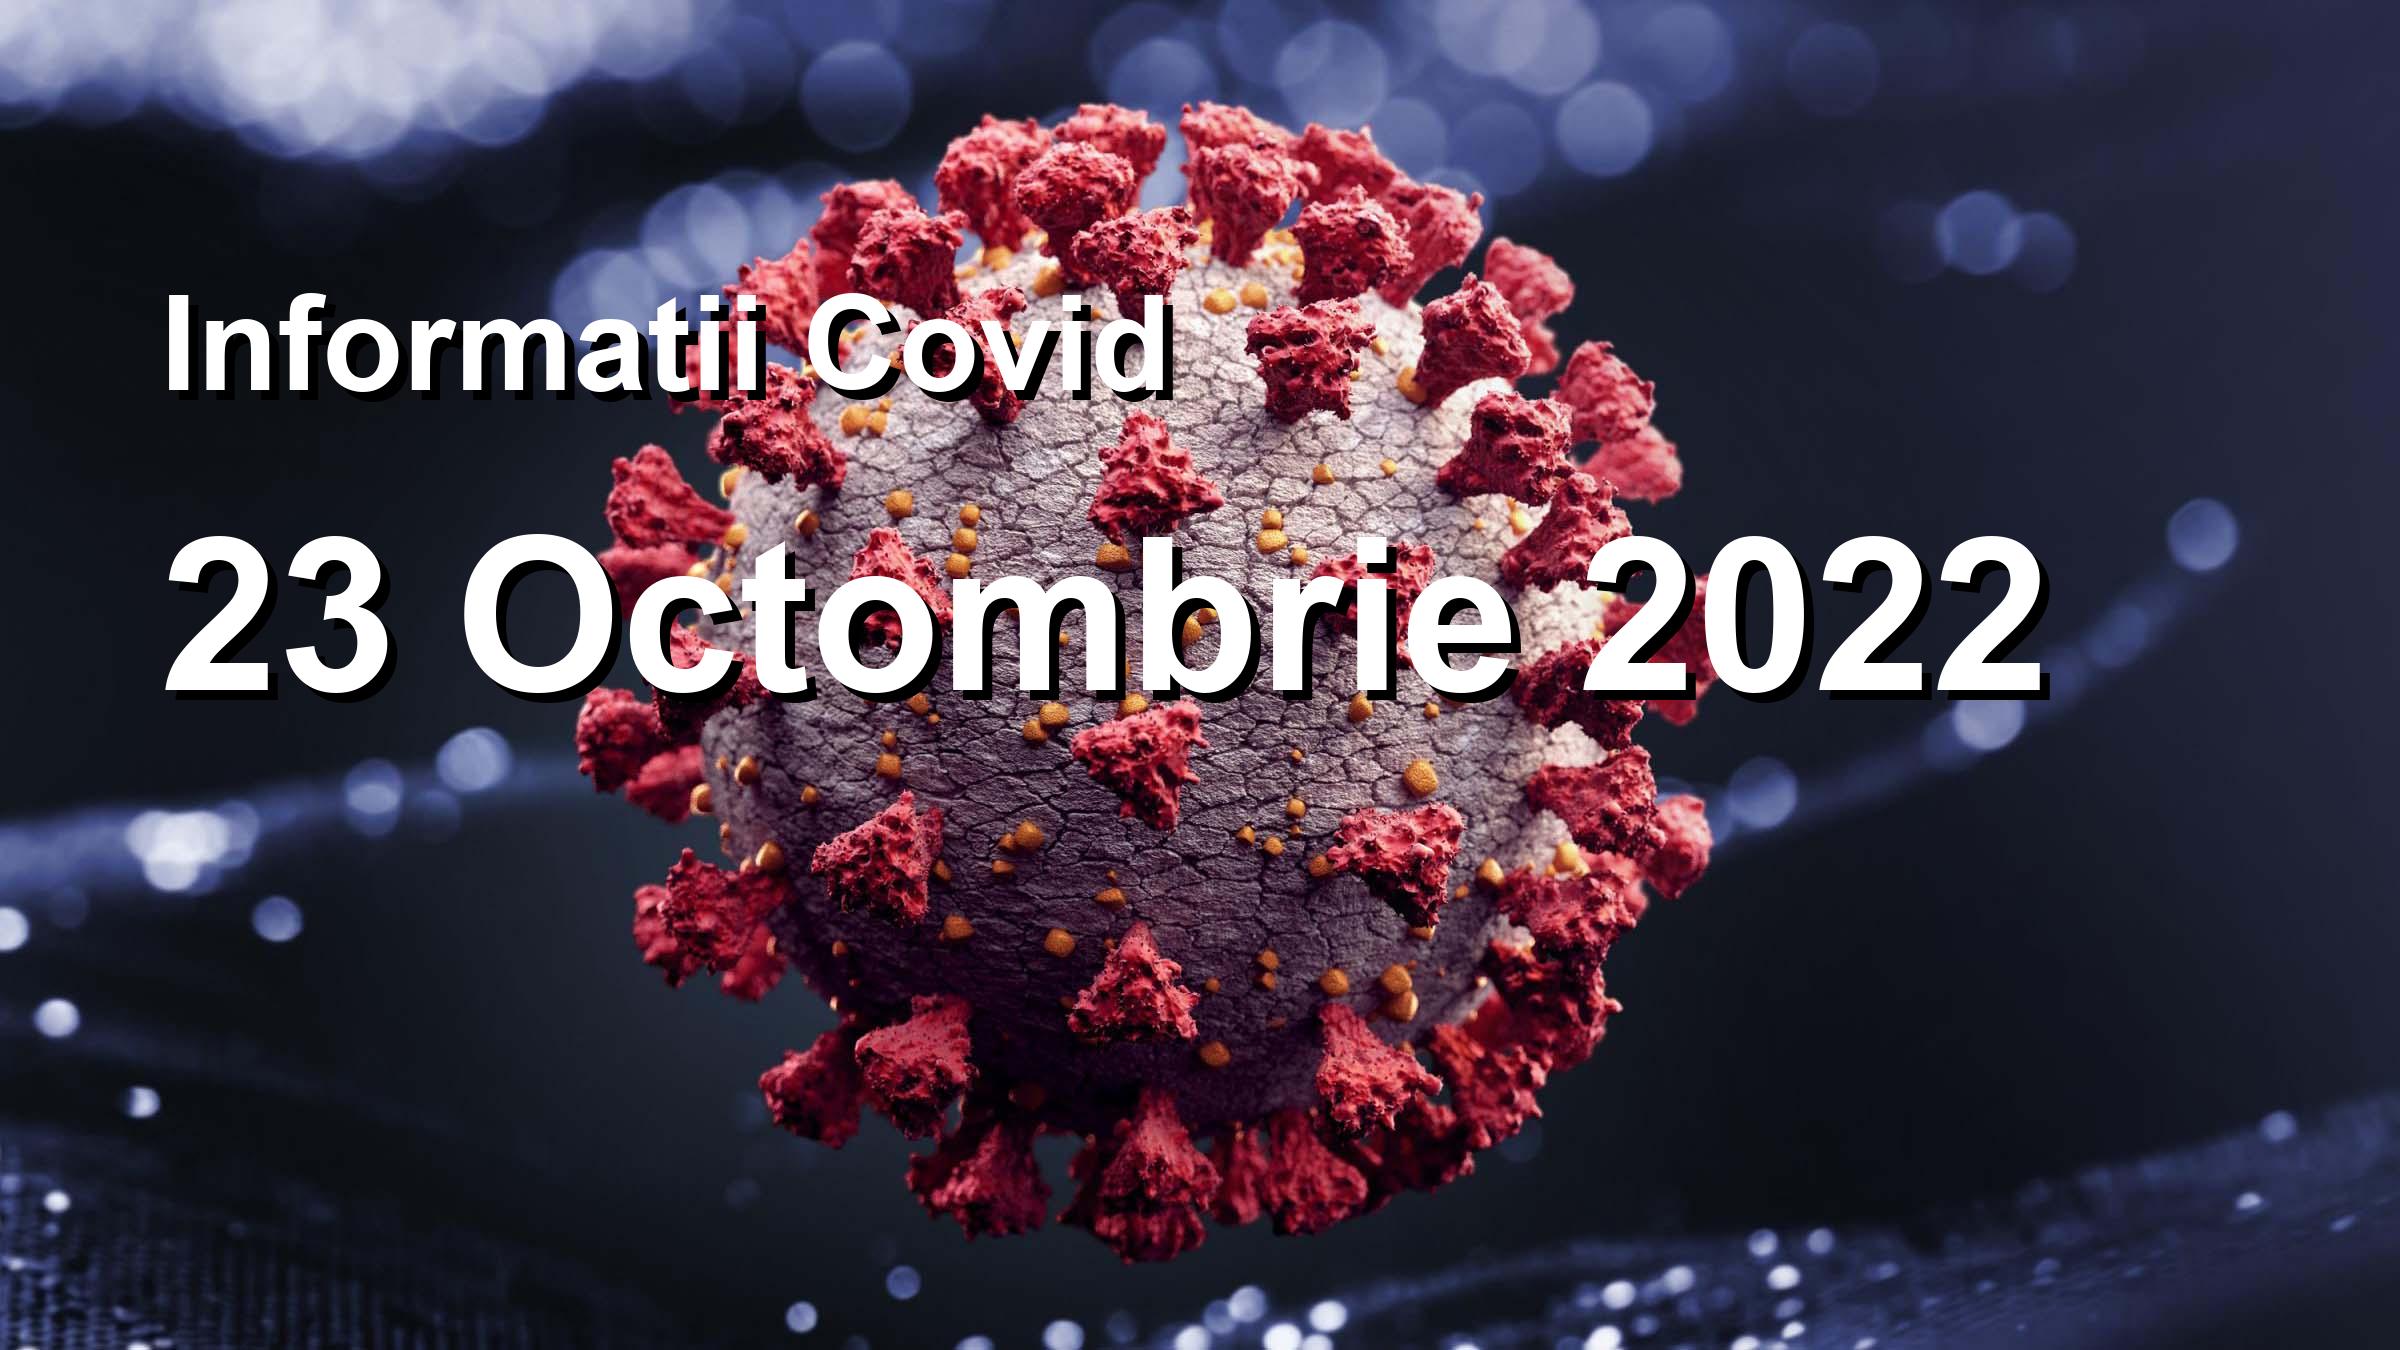 Informatii Covid-19 pentru 23 Octombrie 2022: 206 infectari, 5400 teste. | Coronavirus Romania